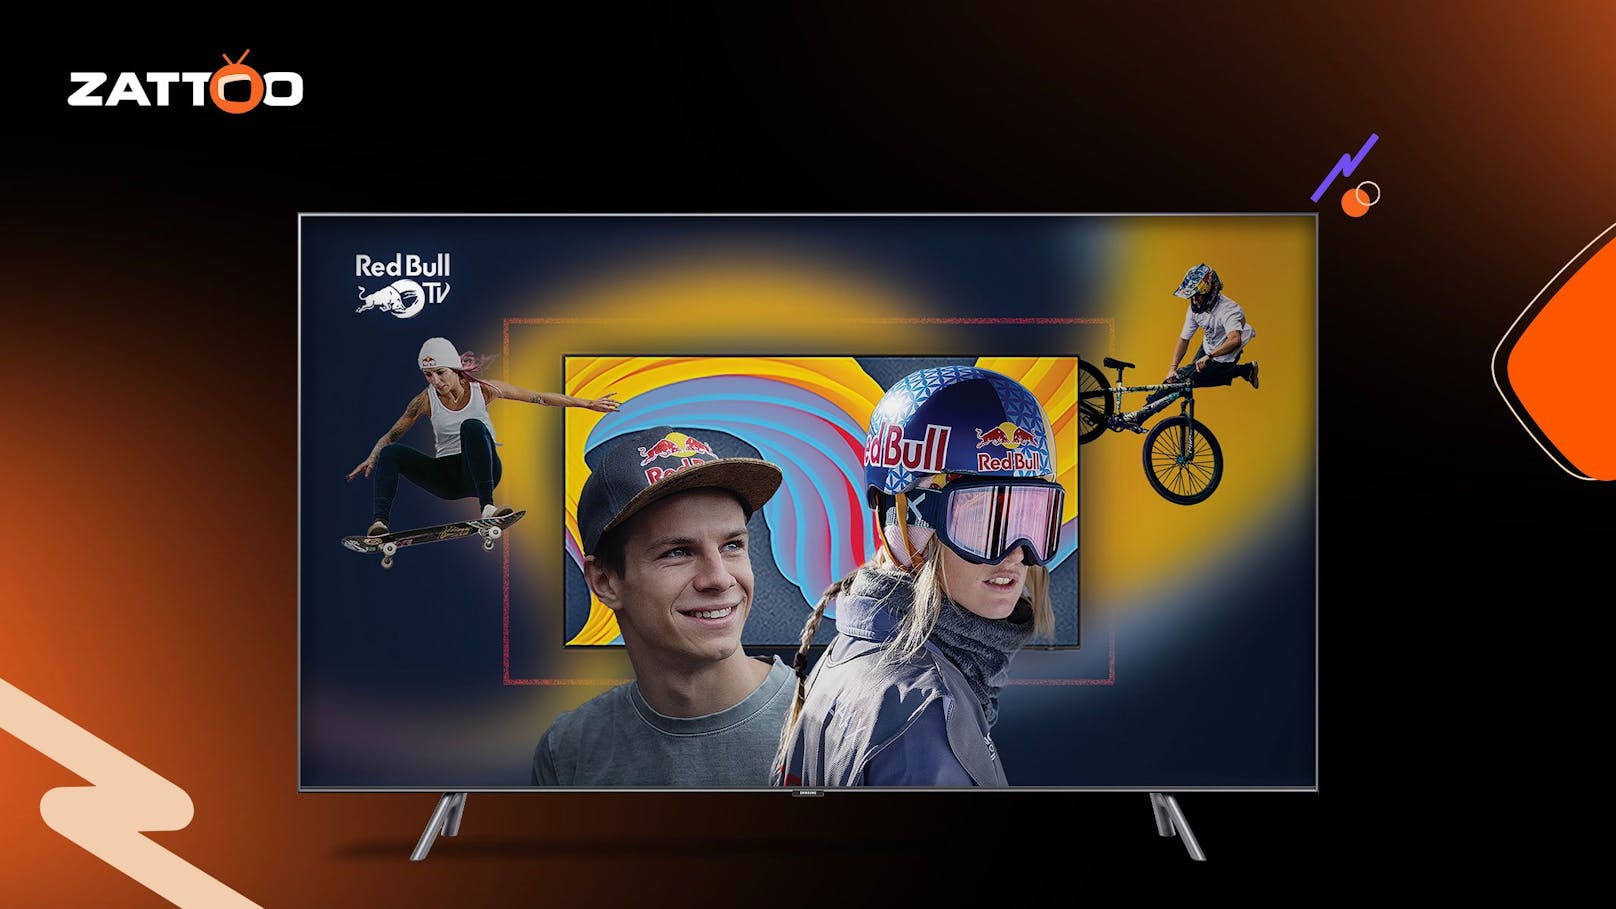 Red Bull TV ab sofort bei Zattoo.